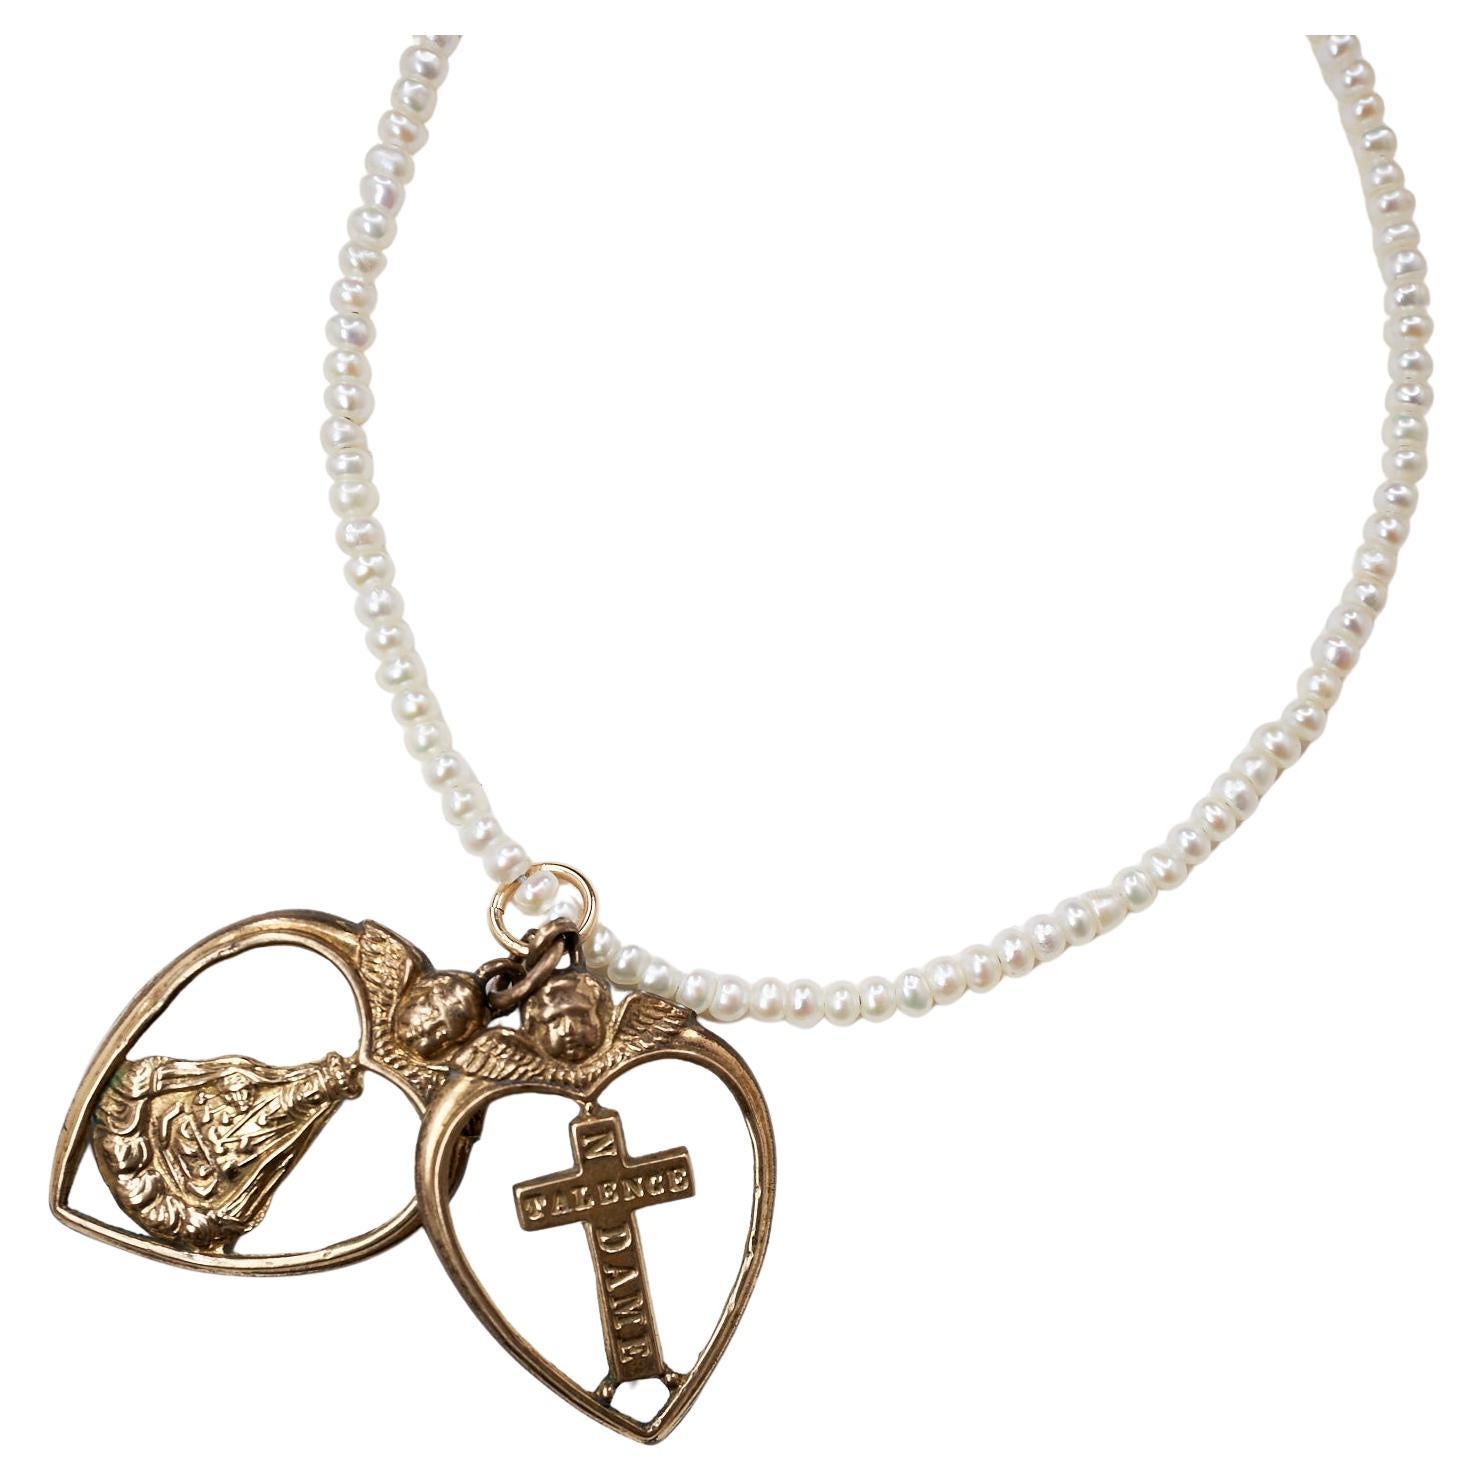 Herz Engel Kreuz Rosario Spirituell Religiös Weiß Perle Tansanit Halskette
Länge: 16